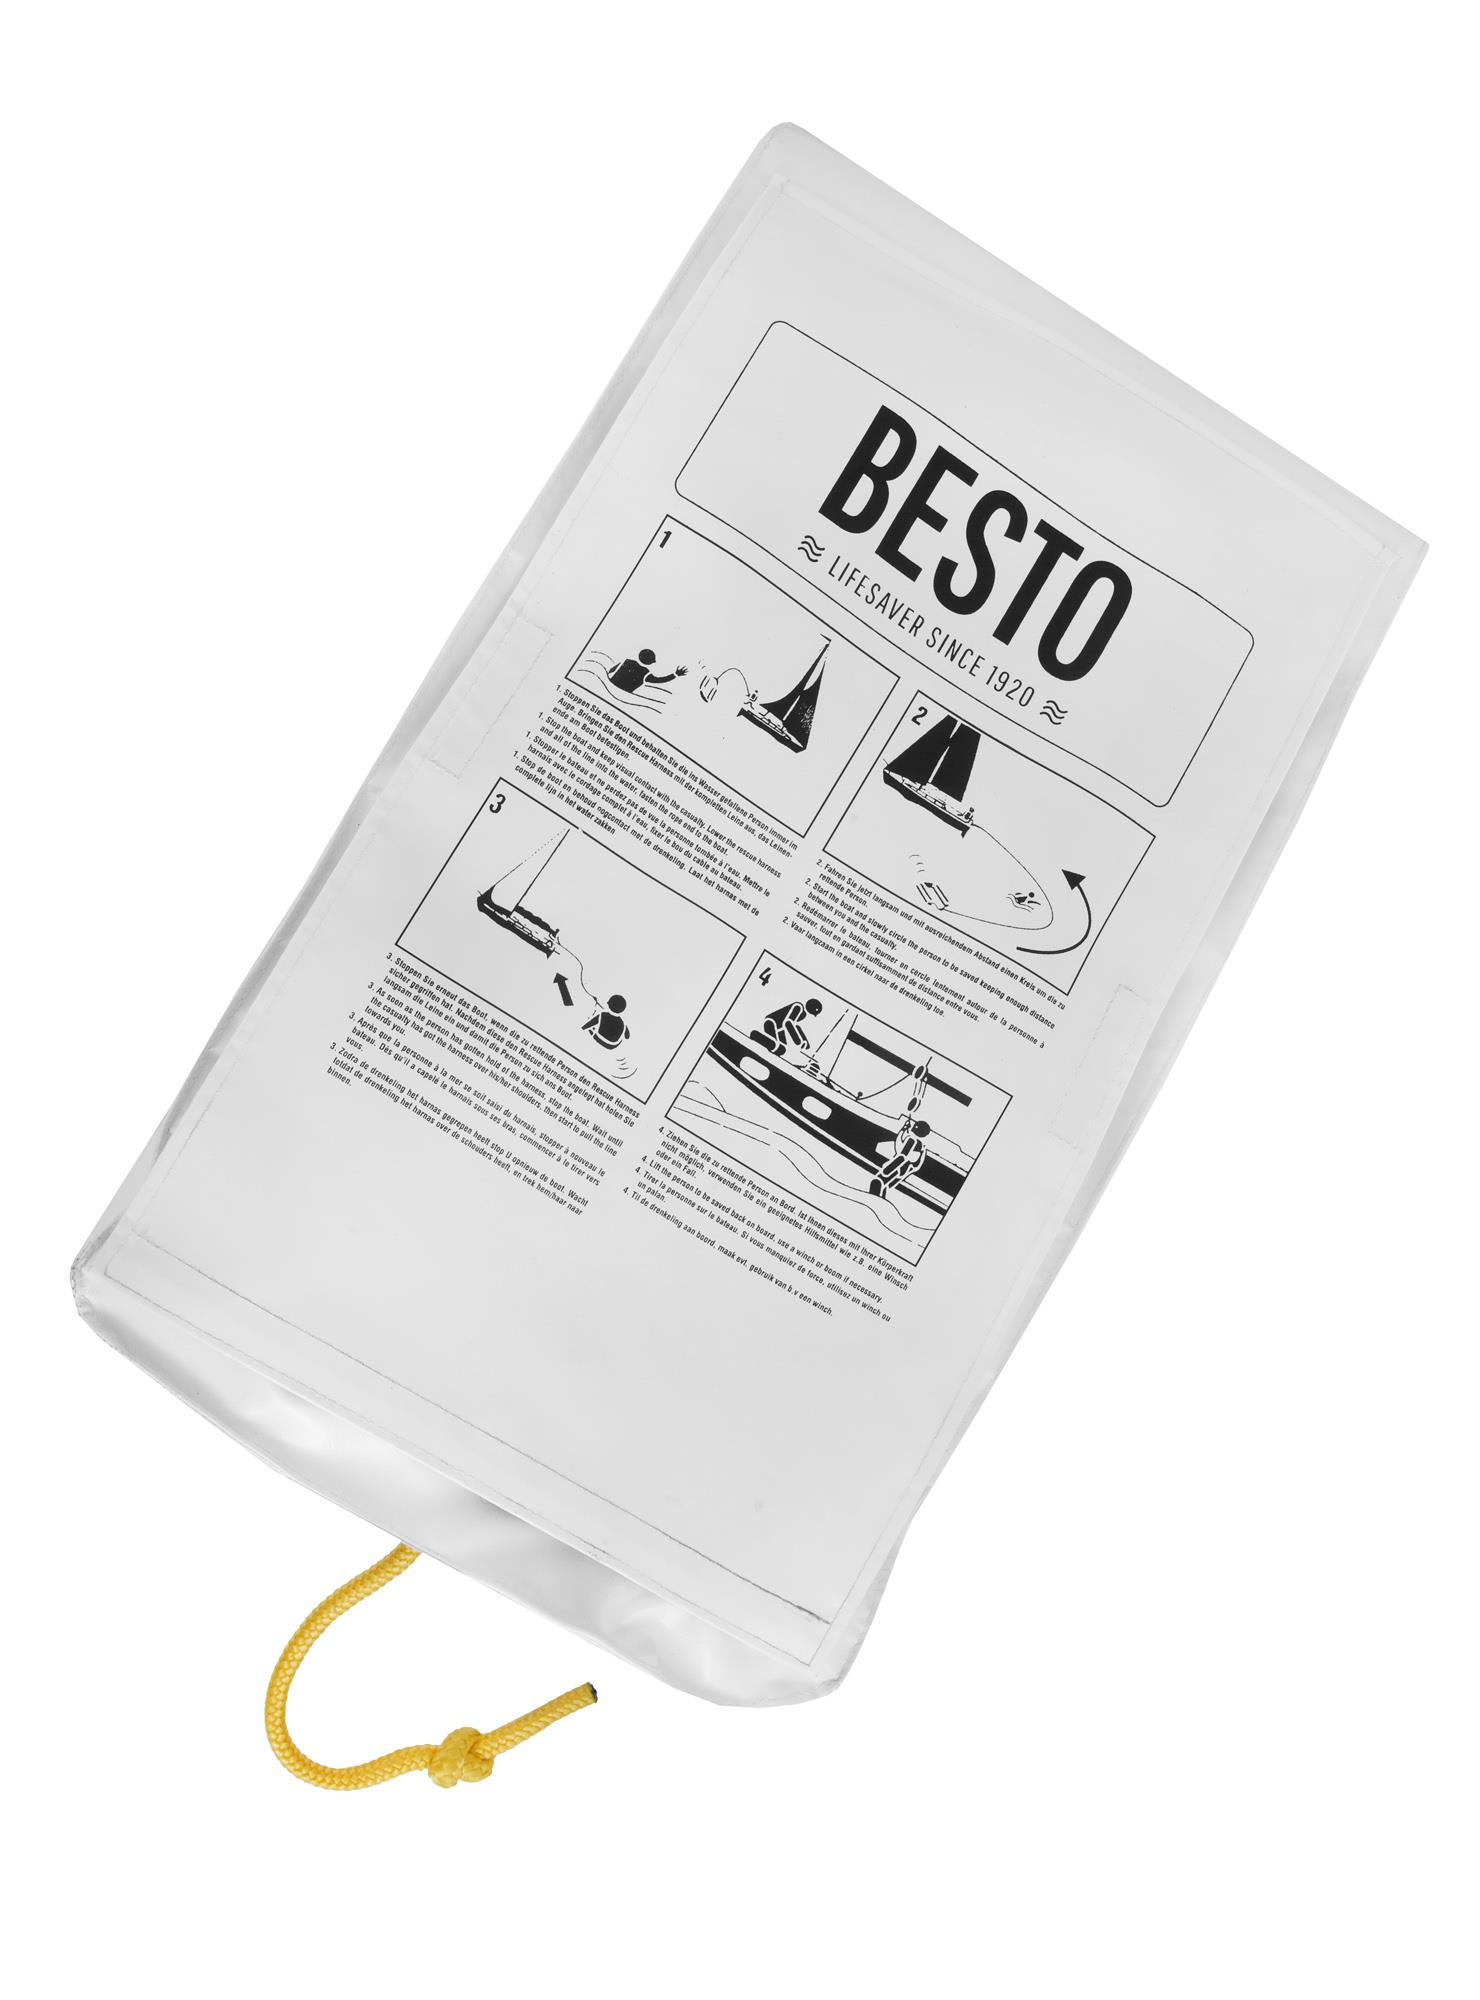 Besto Rescue System Wipe-Clean, weiß